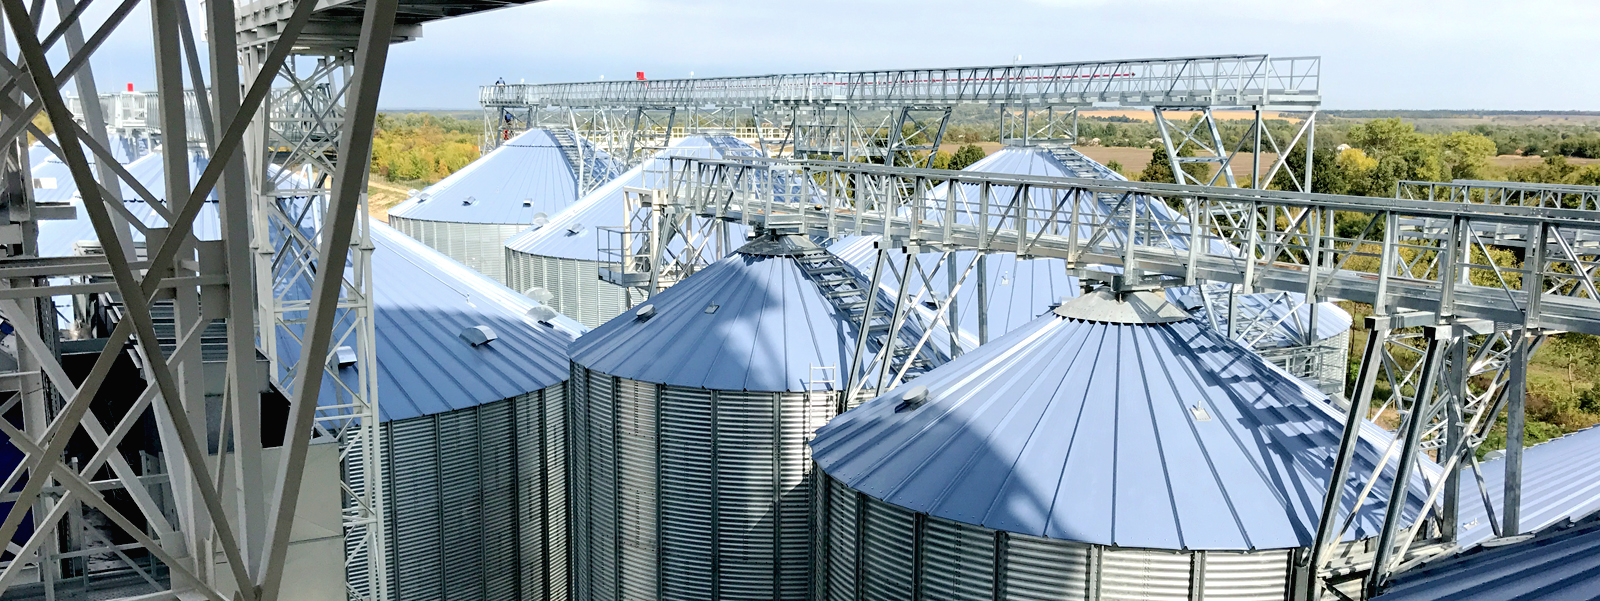 Foto de silos de grãos da PETKUS